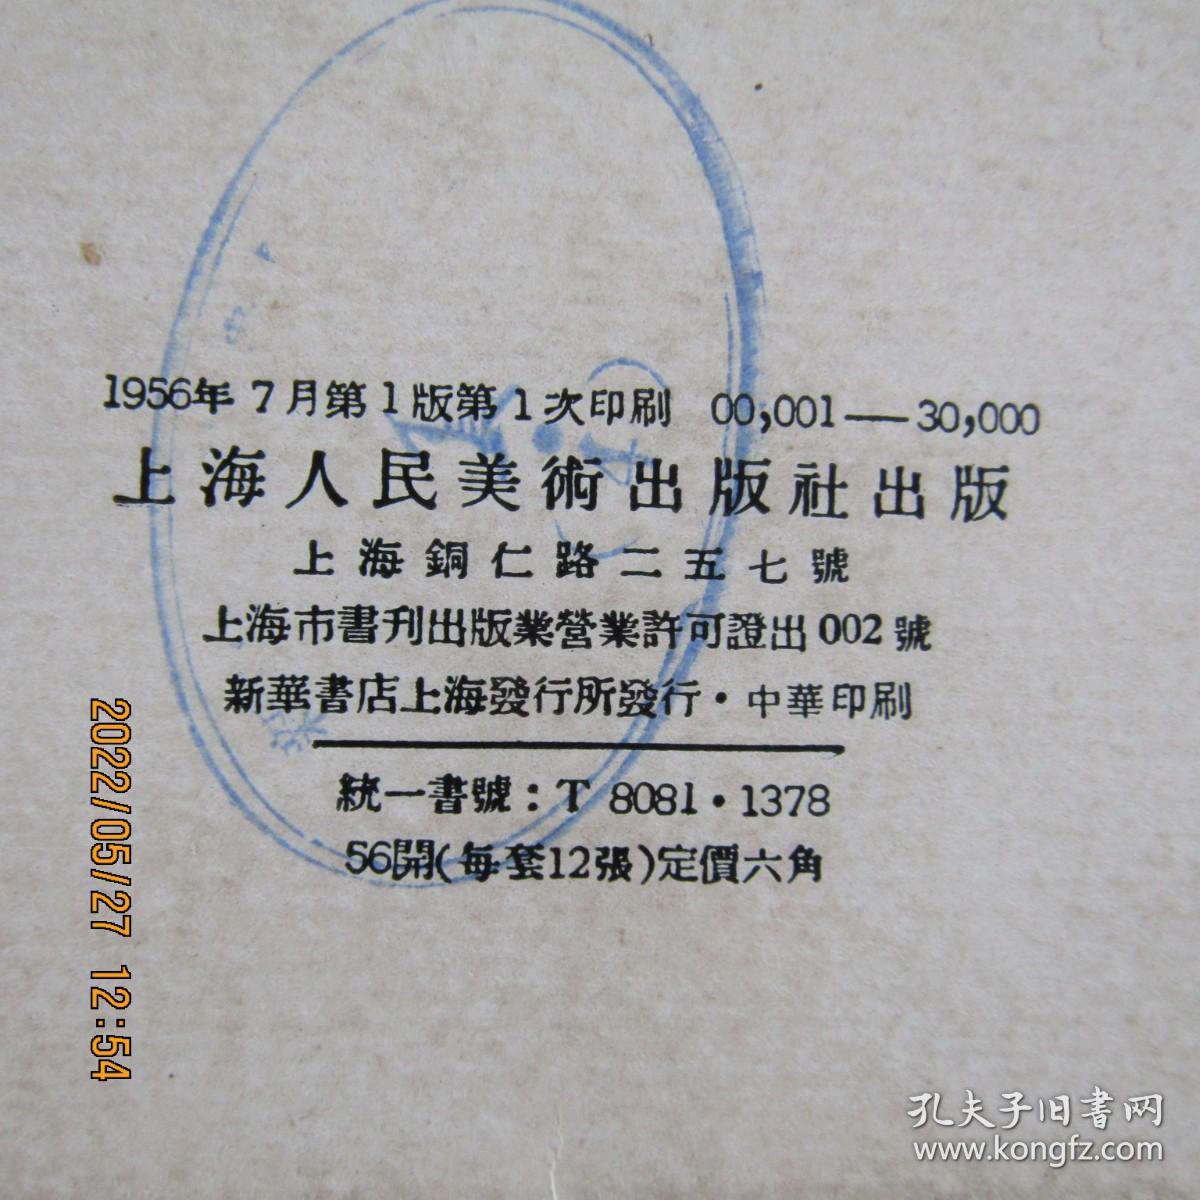 1956年上海人美《伦勃朗作品选》明信片画片12枚全 3万印量上品